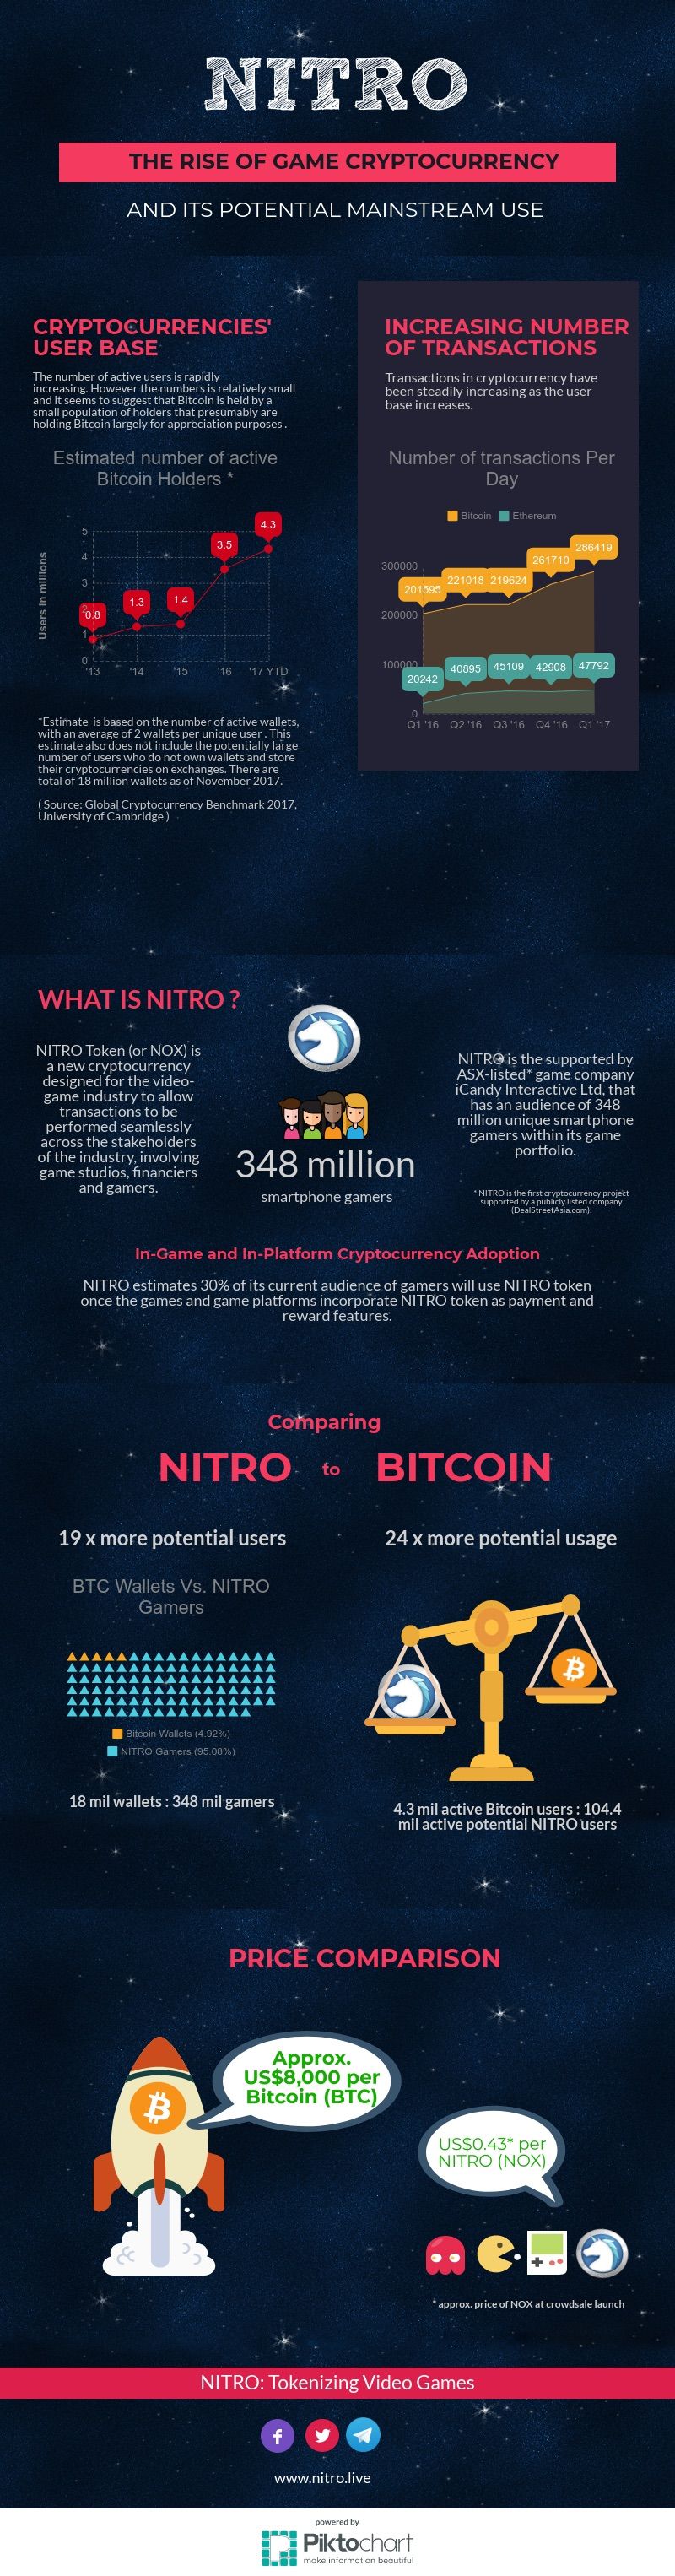 infographics-nitro-vs-bitcoin.jpg